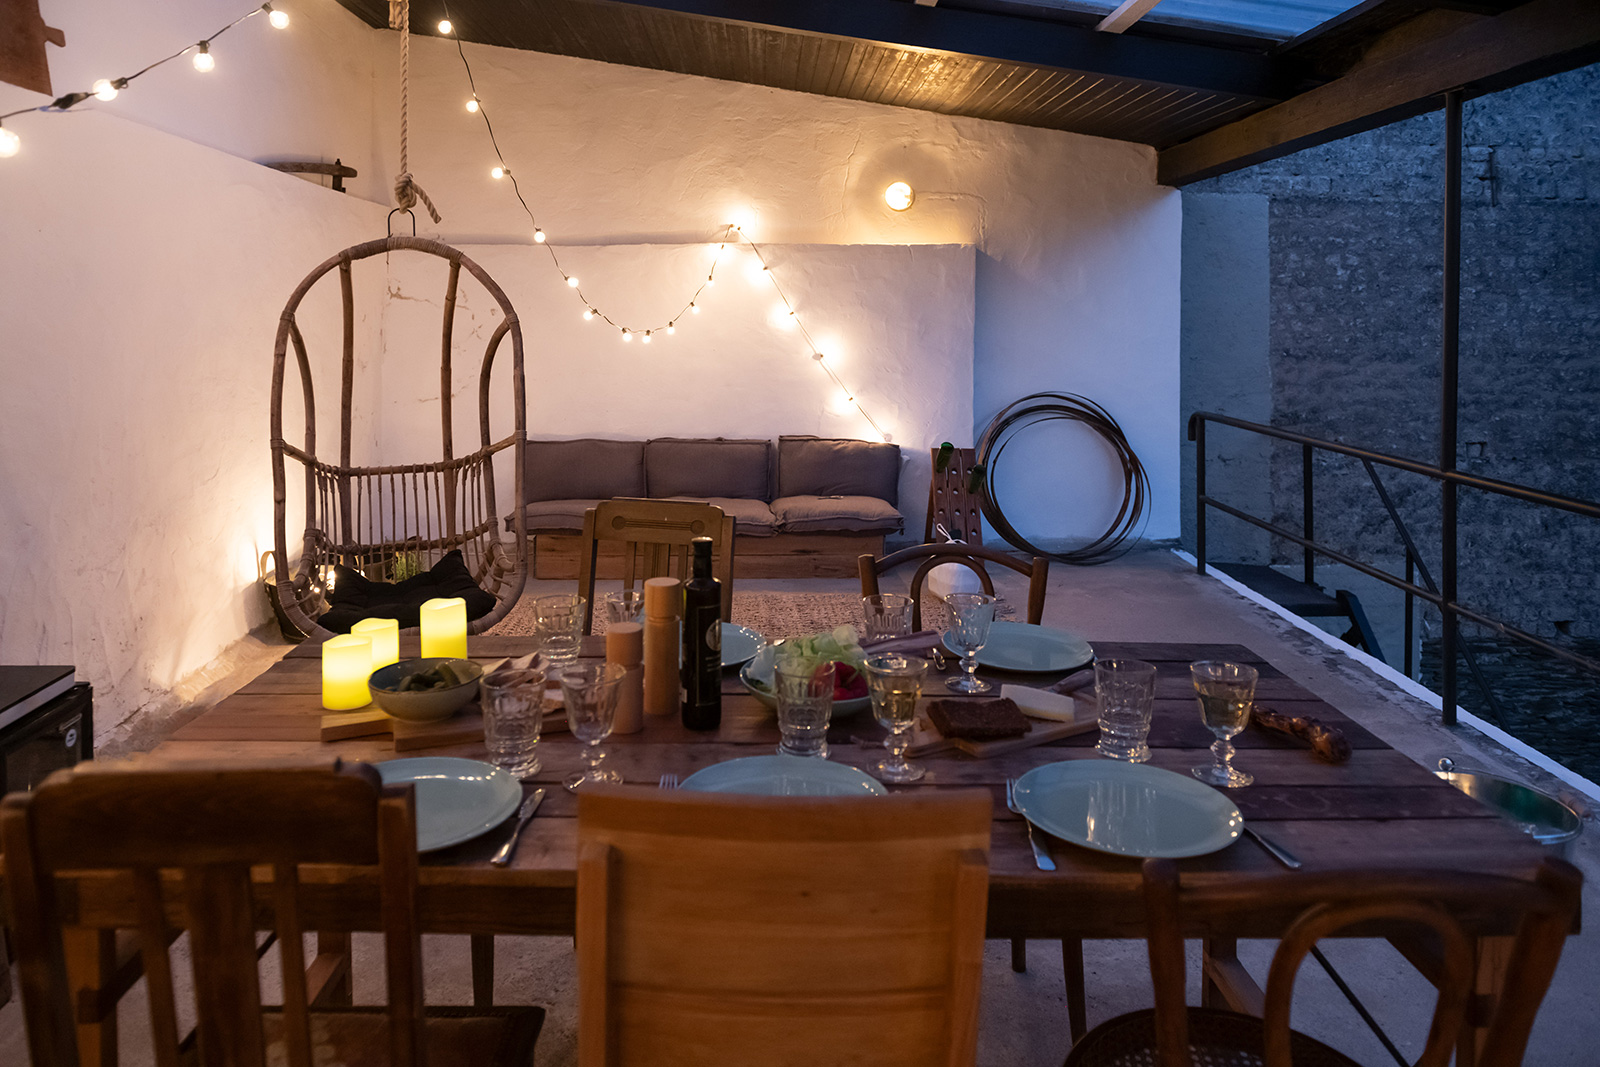 Außenbereich Terrasse:  Gedeckter Tisch vor Lounge-Möbeln bei Dämmerung stimmungsvoll beleuchtet